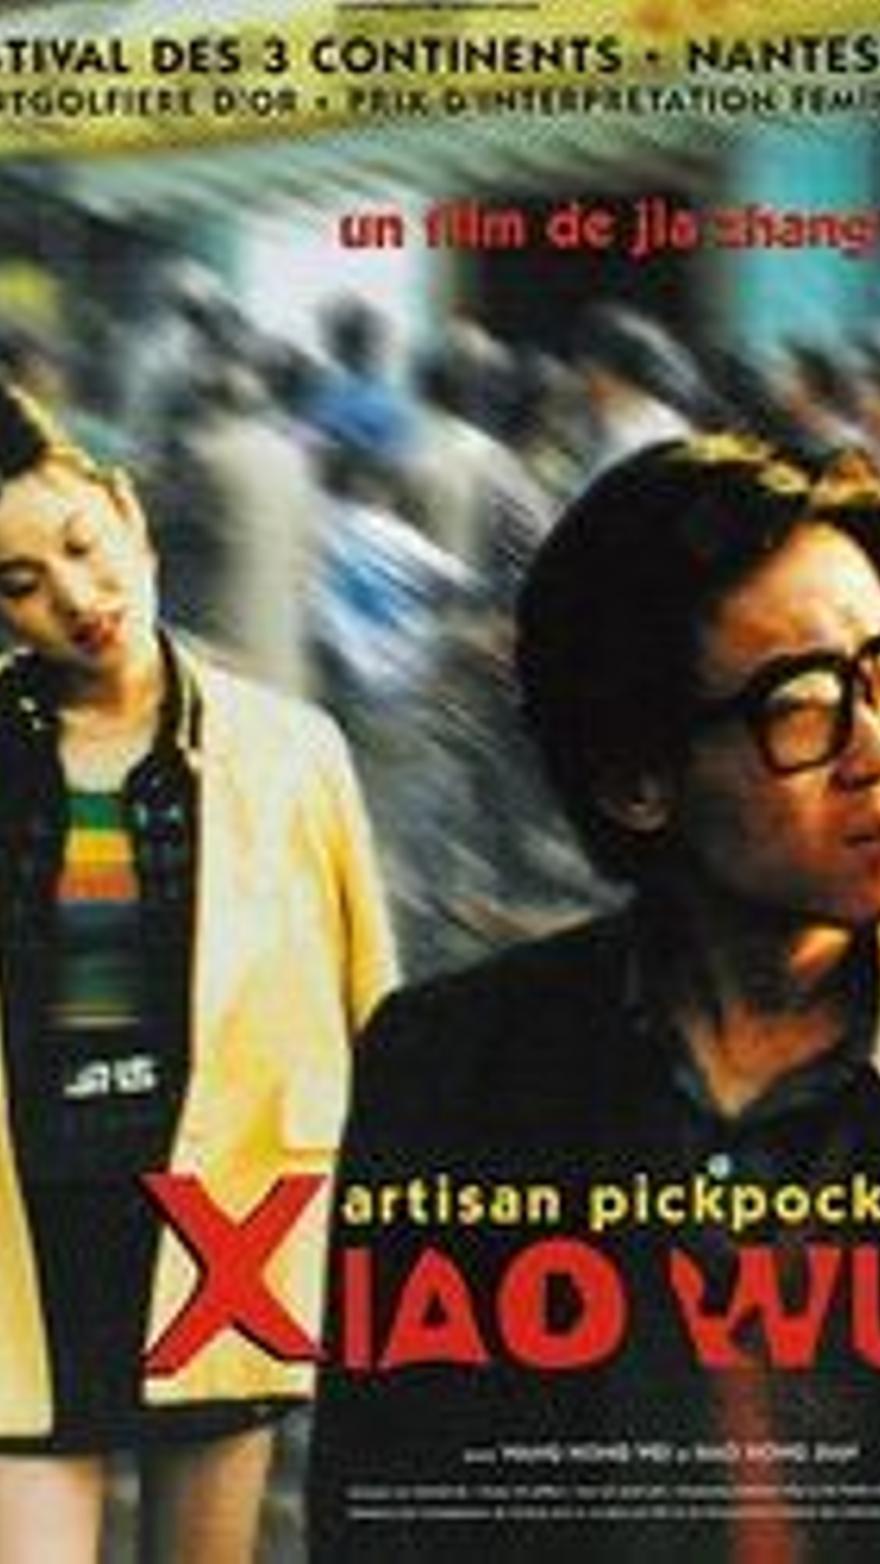 Pickpocket (1997)